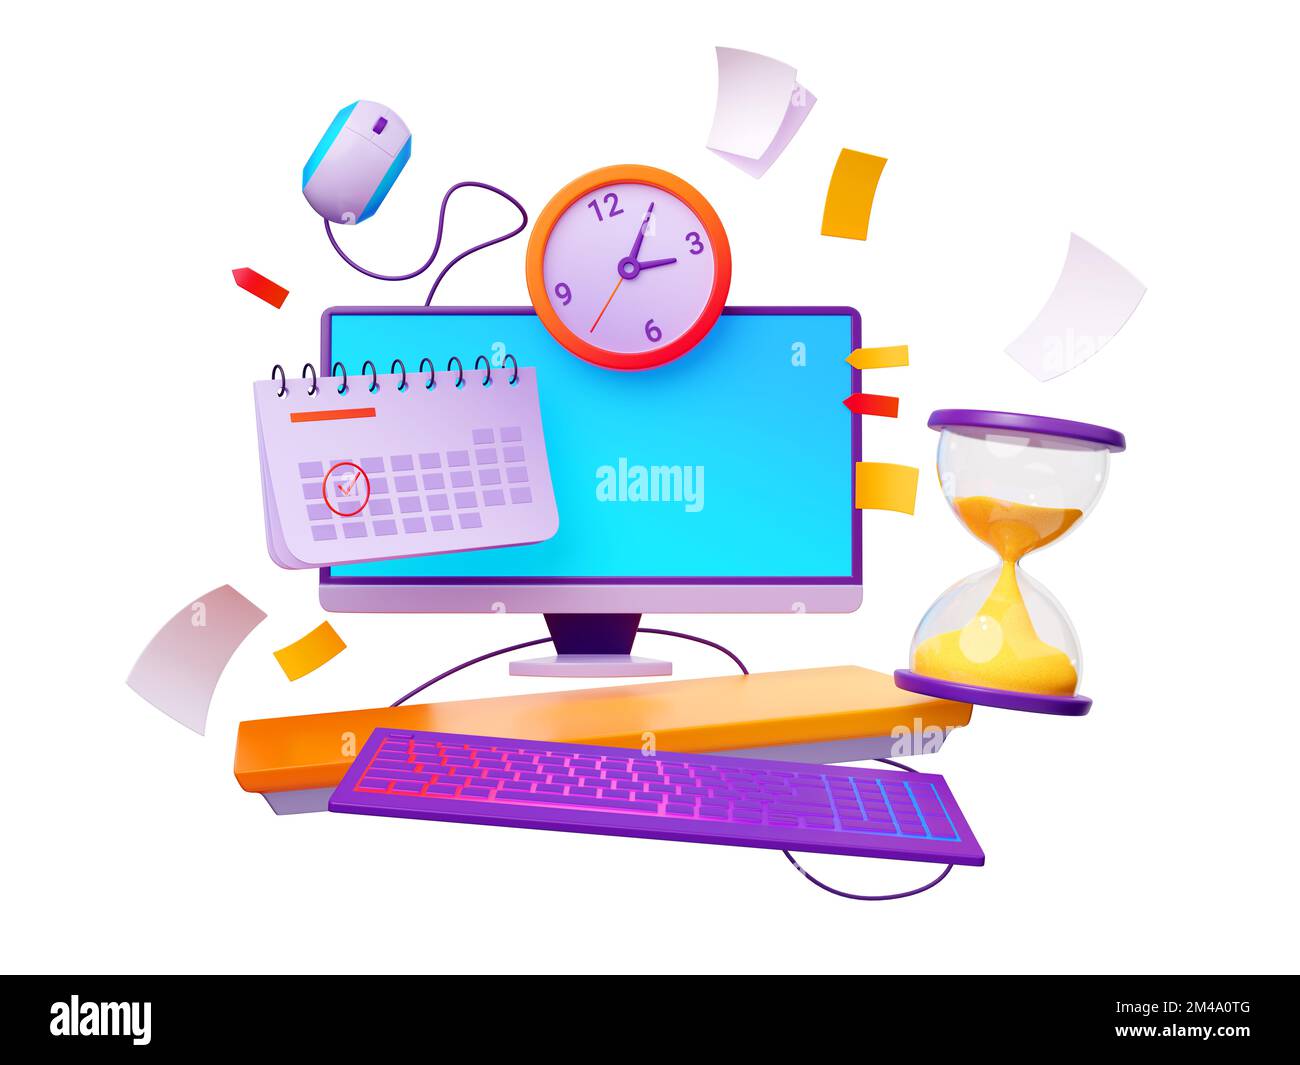 Concetto di scadenza del lavoro. 3D illustrazione di computer desktop,  orologio, data contrassegnata nel calendario con